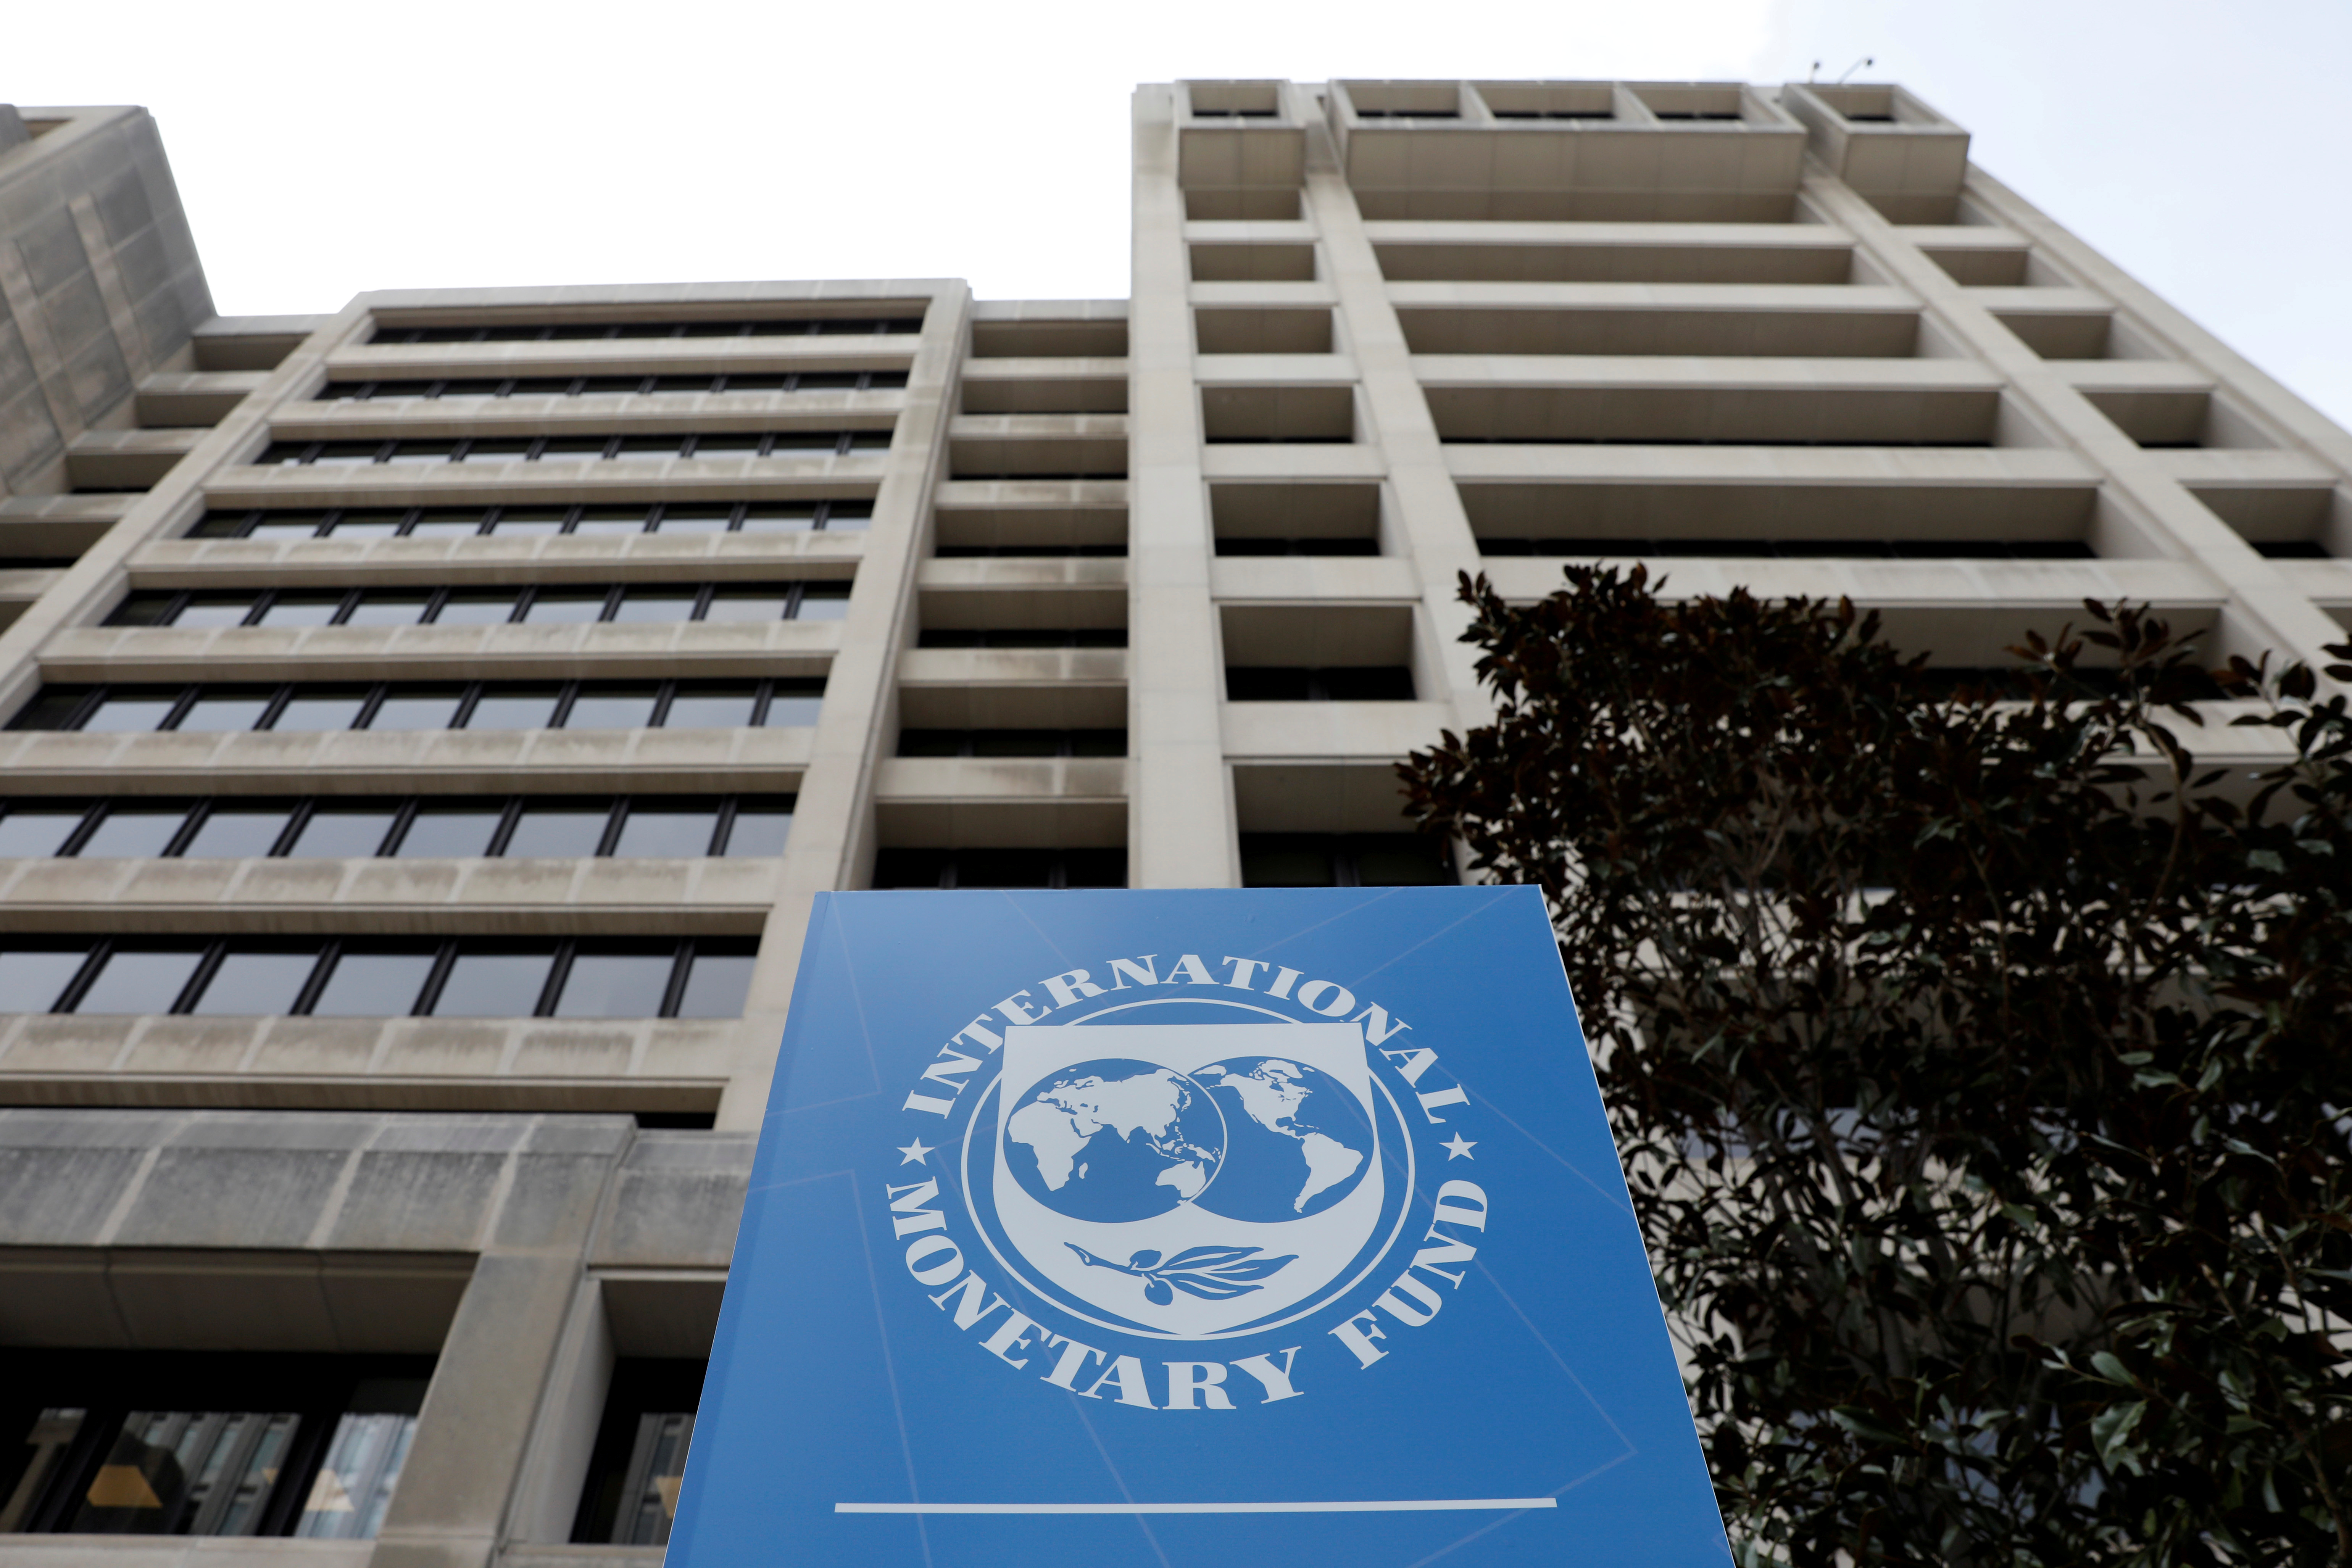 Economía global puede sufrir “secuelas importantes” por la pandemia, advierte el FMI